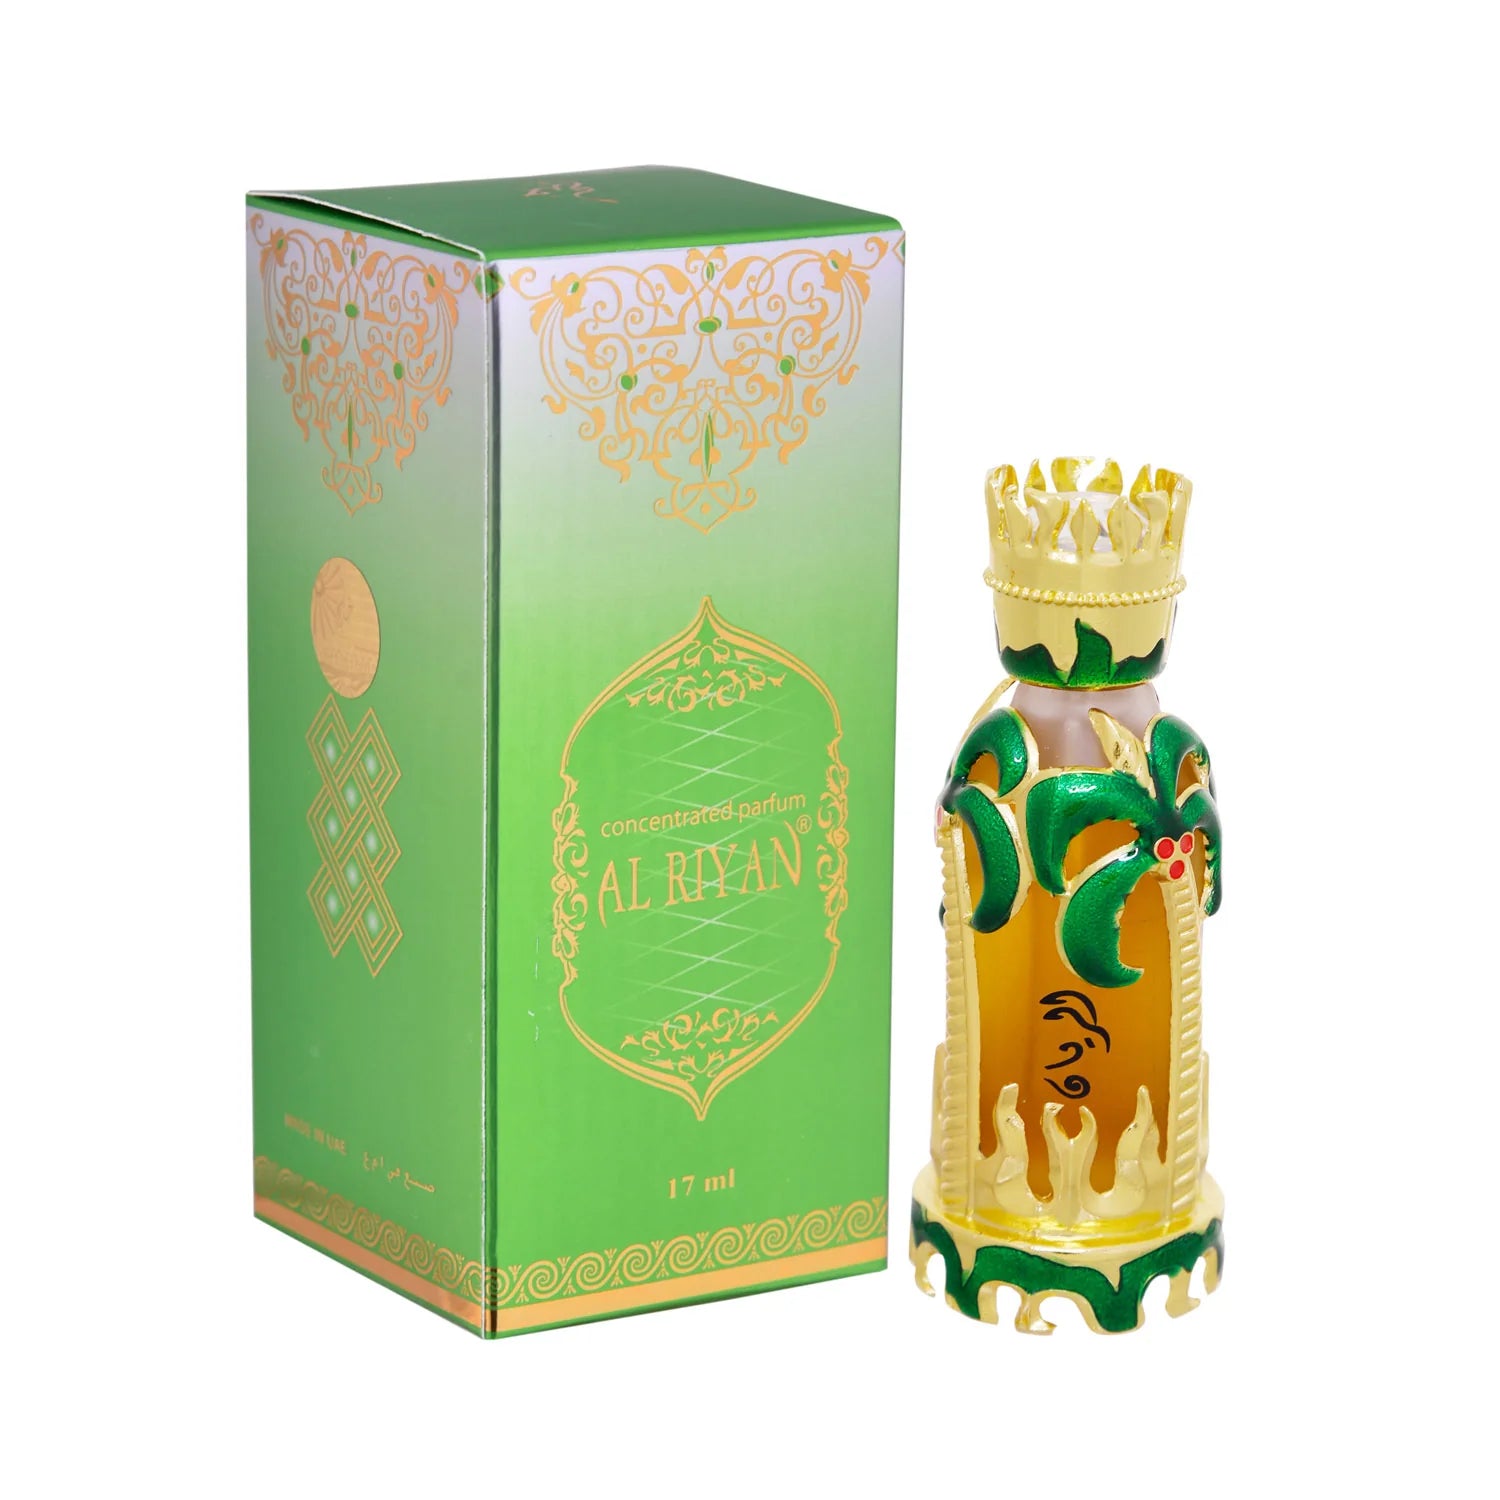 Al Riyan CPO (17ml) fragrance oil by Khadlaj | Khan El Khalili